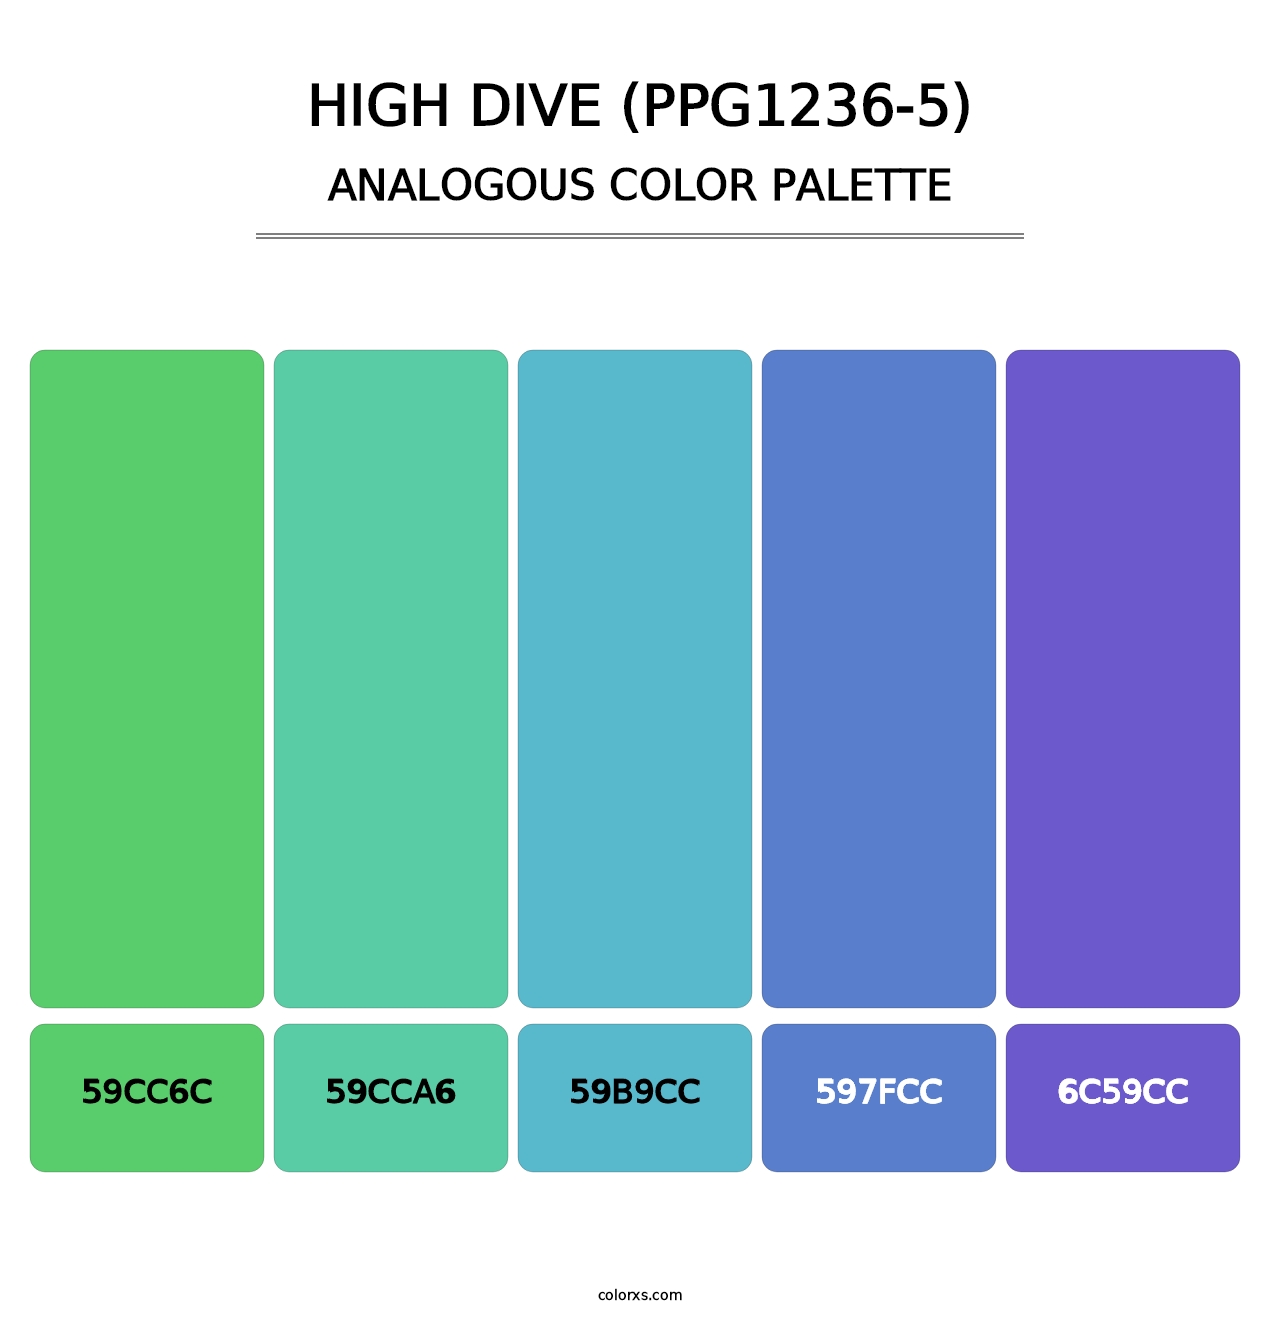 High Dive (PPG1236-5) - Analogous Color Palette